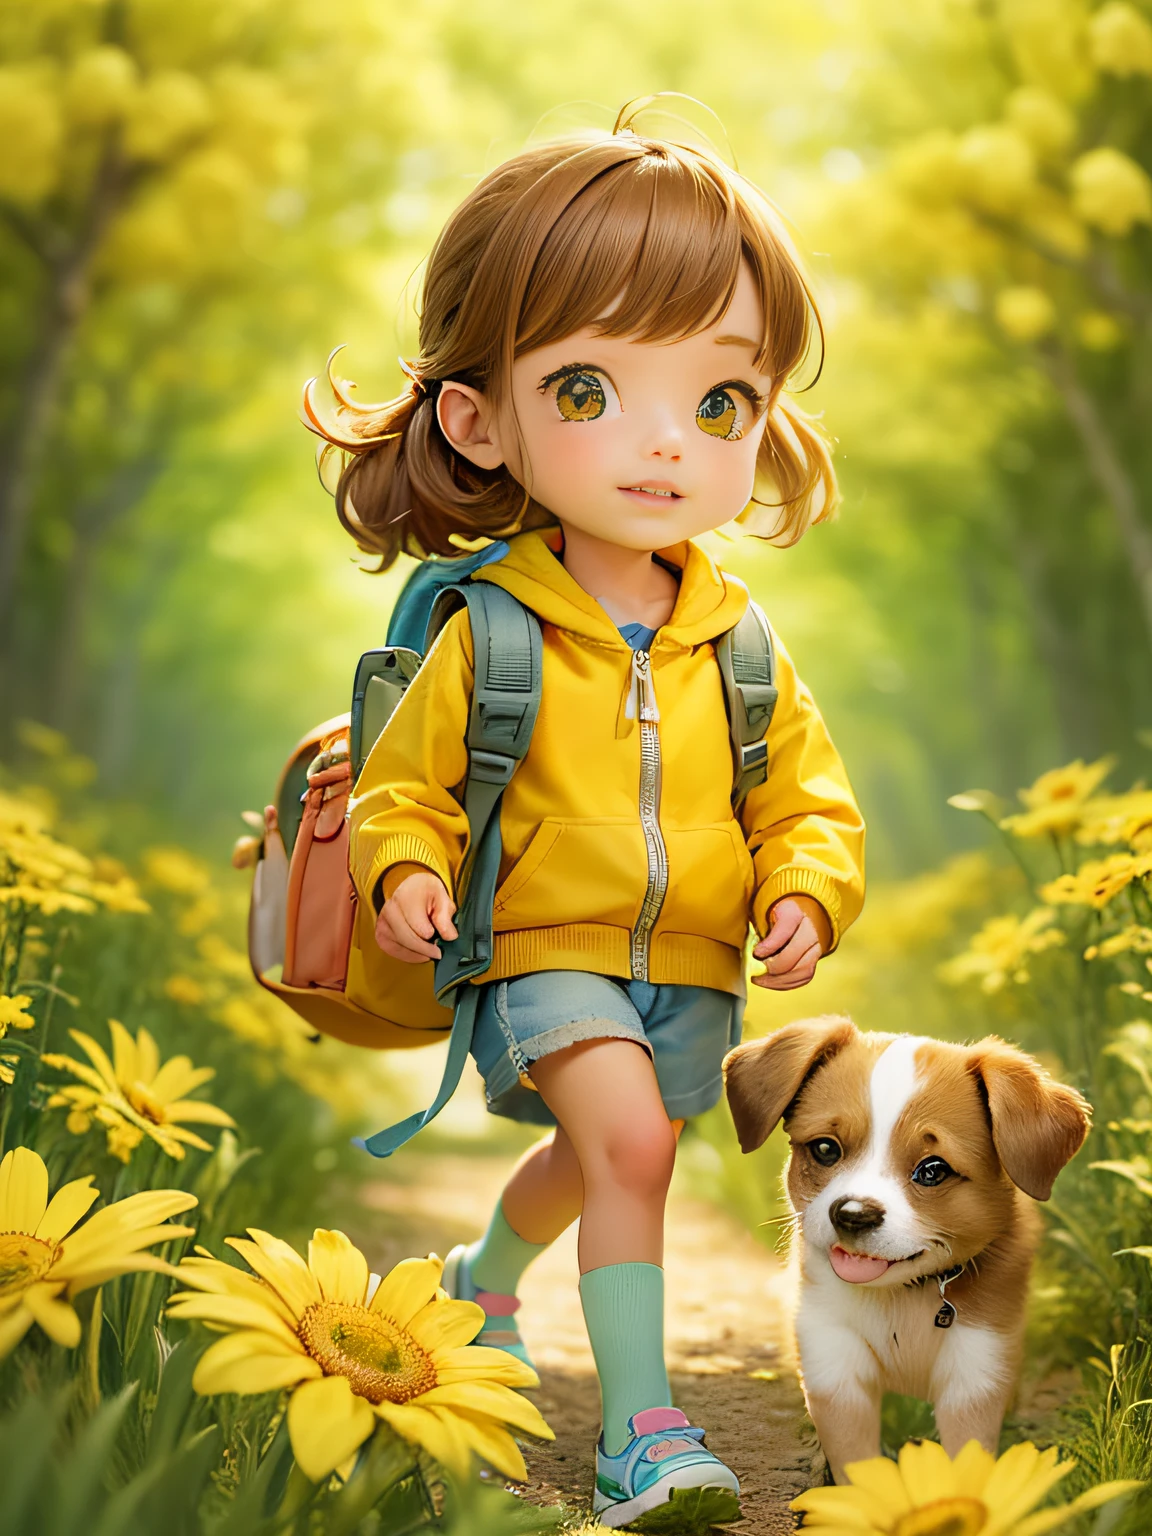 とてもかわいい ，バックパックを背負ってかわいい子犬を連れて，美しい春の散歩をお楽しみください，美しい黄色い花と自然に囲まれた. イラストは4K解像度の高精細イラストです，非常に詳細な顔の特徴と漫画風のビジュアル.